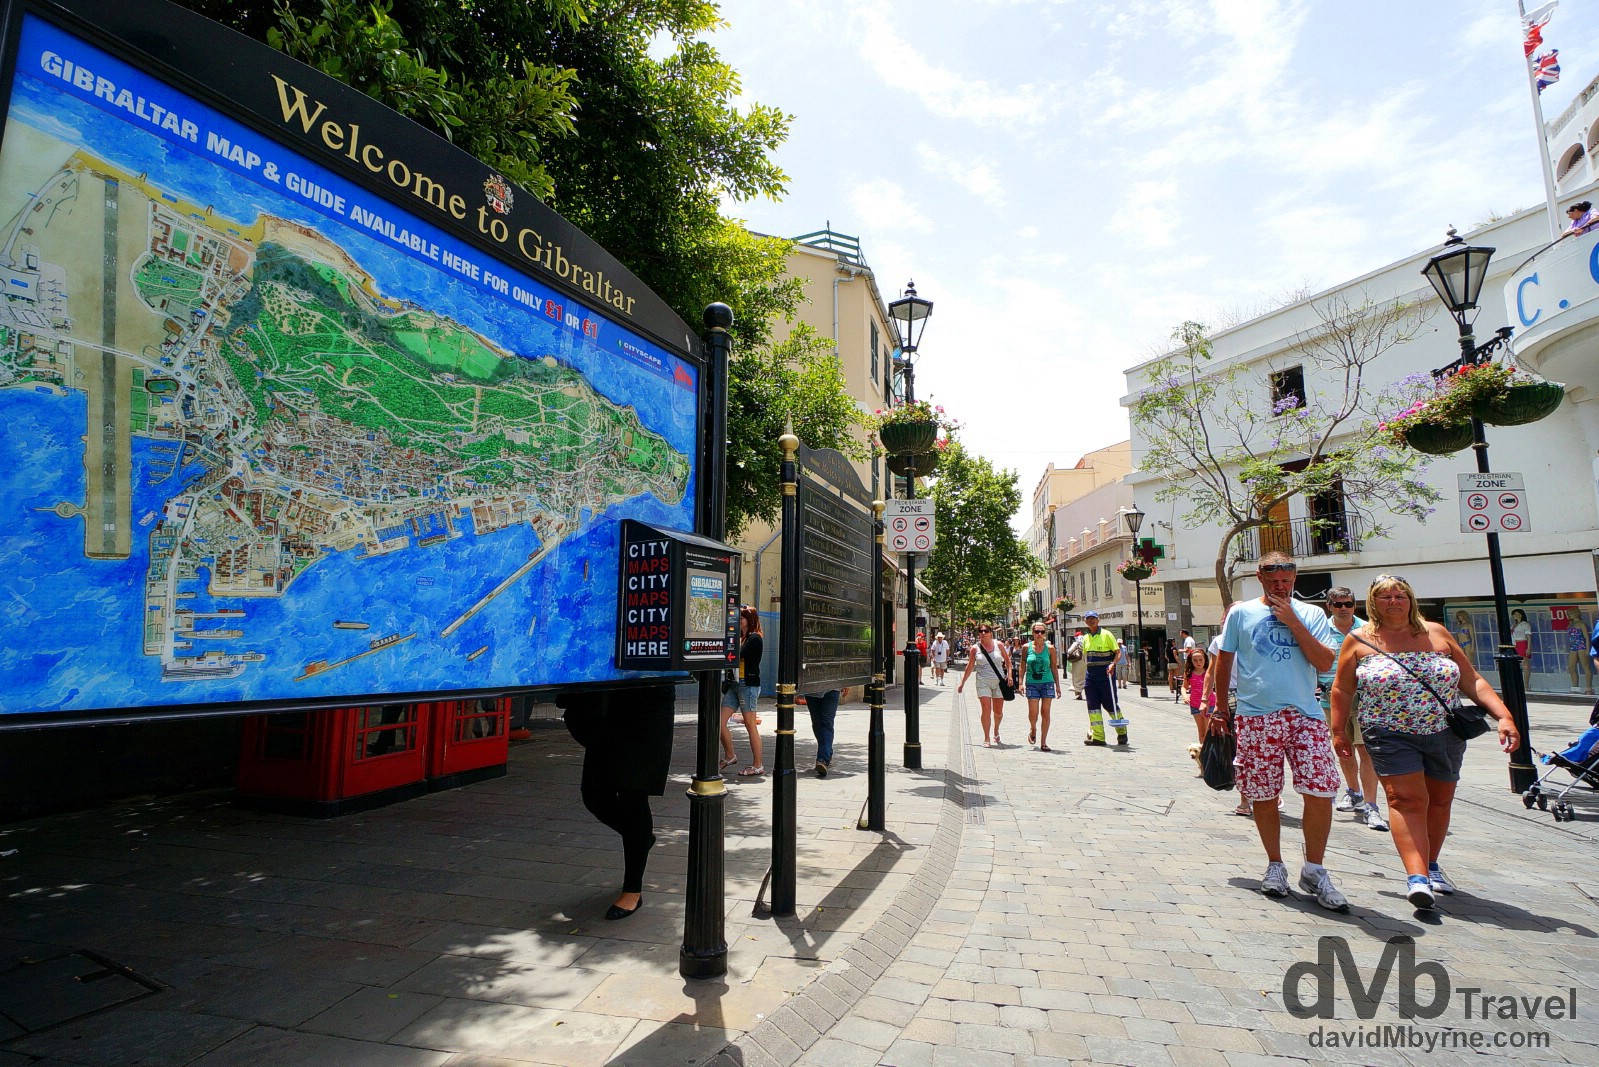 The start of Main Street in Gibraltar. June 5th, 2014.